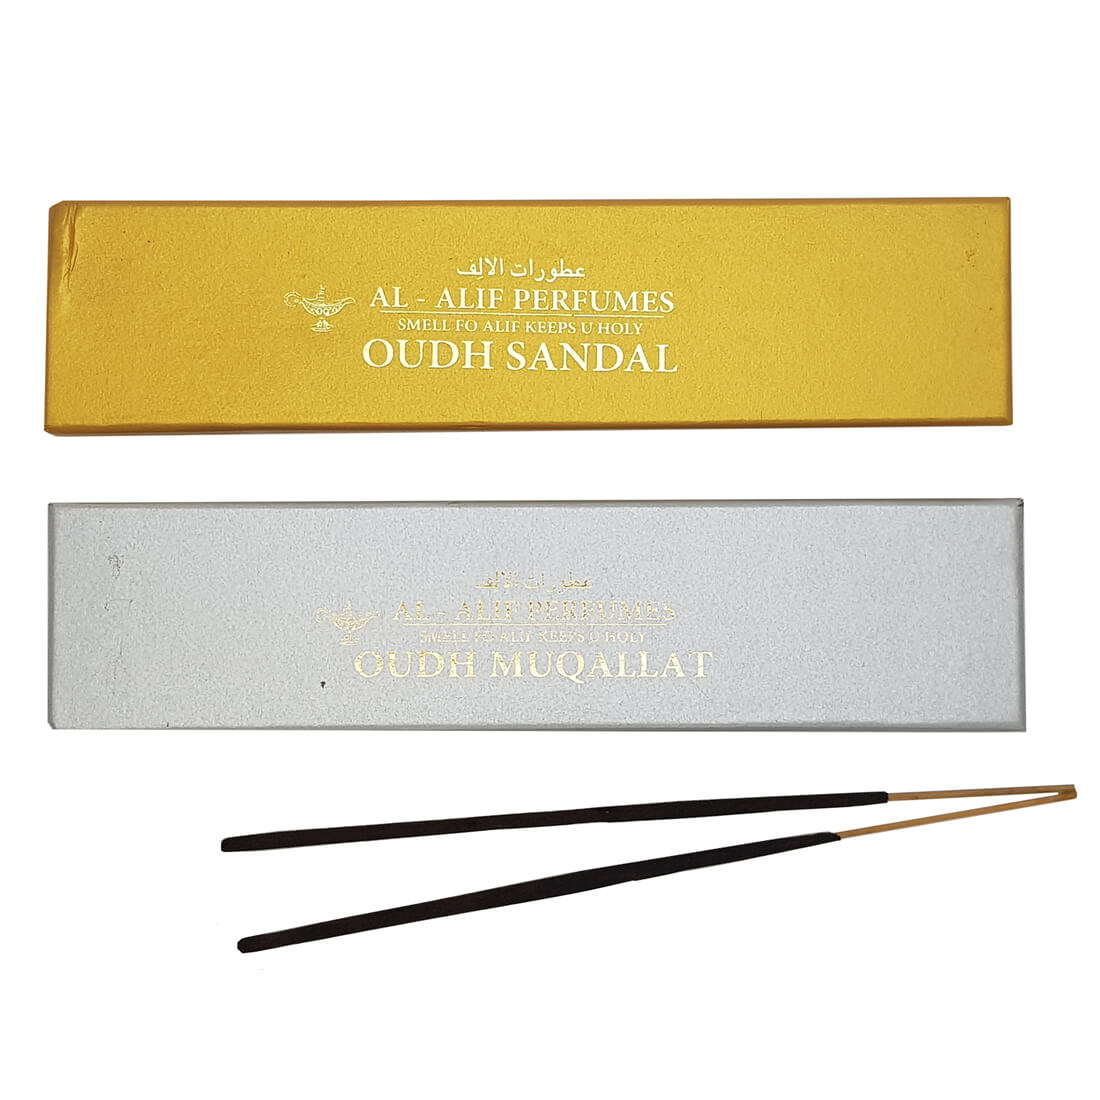 Sandal Oudh and Muqallat Oudh Handmade Masala Agarbatti Incense Sticks - 50g